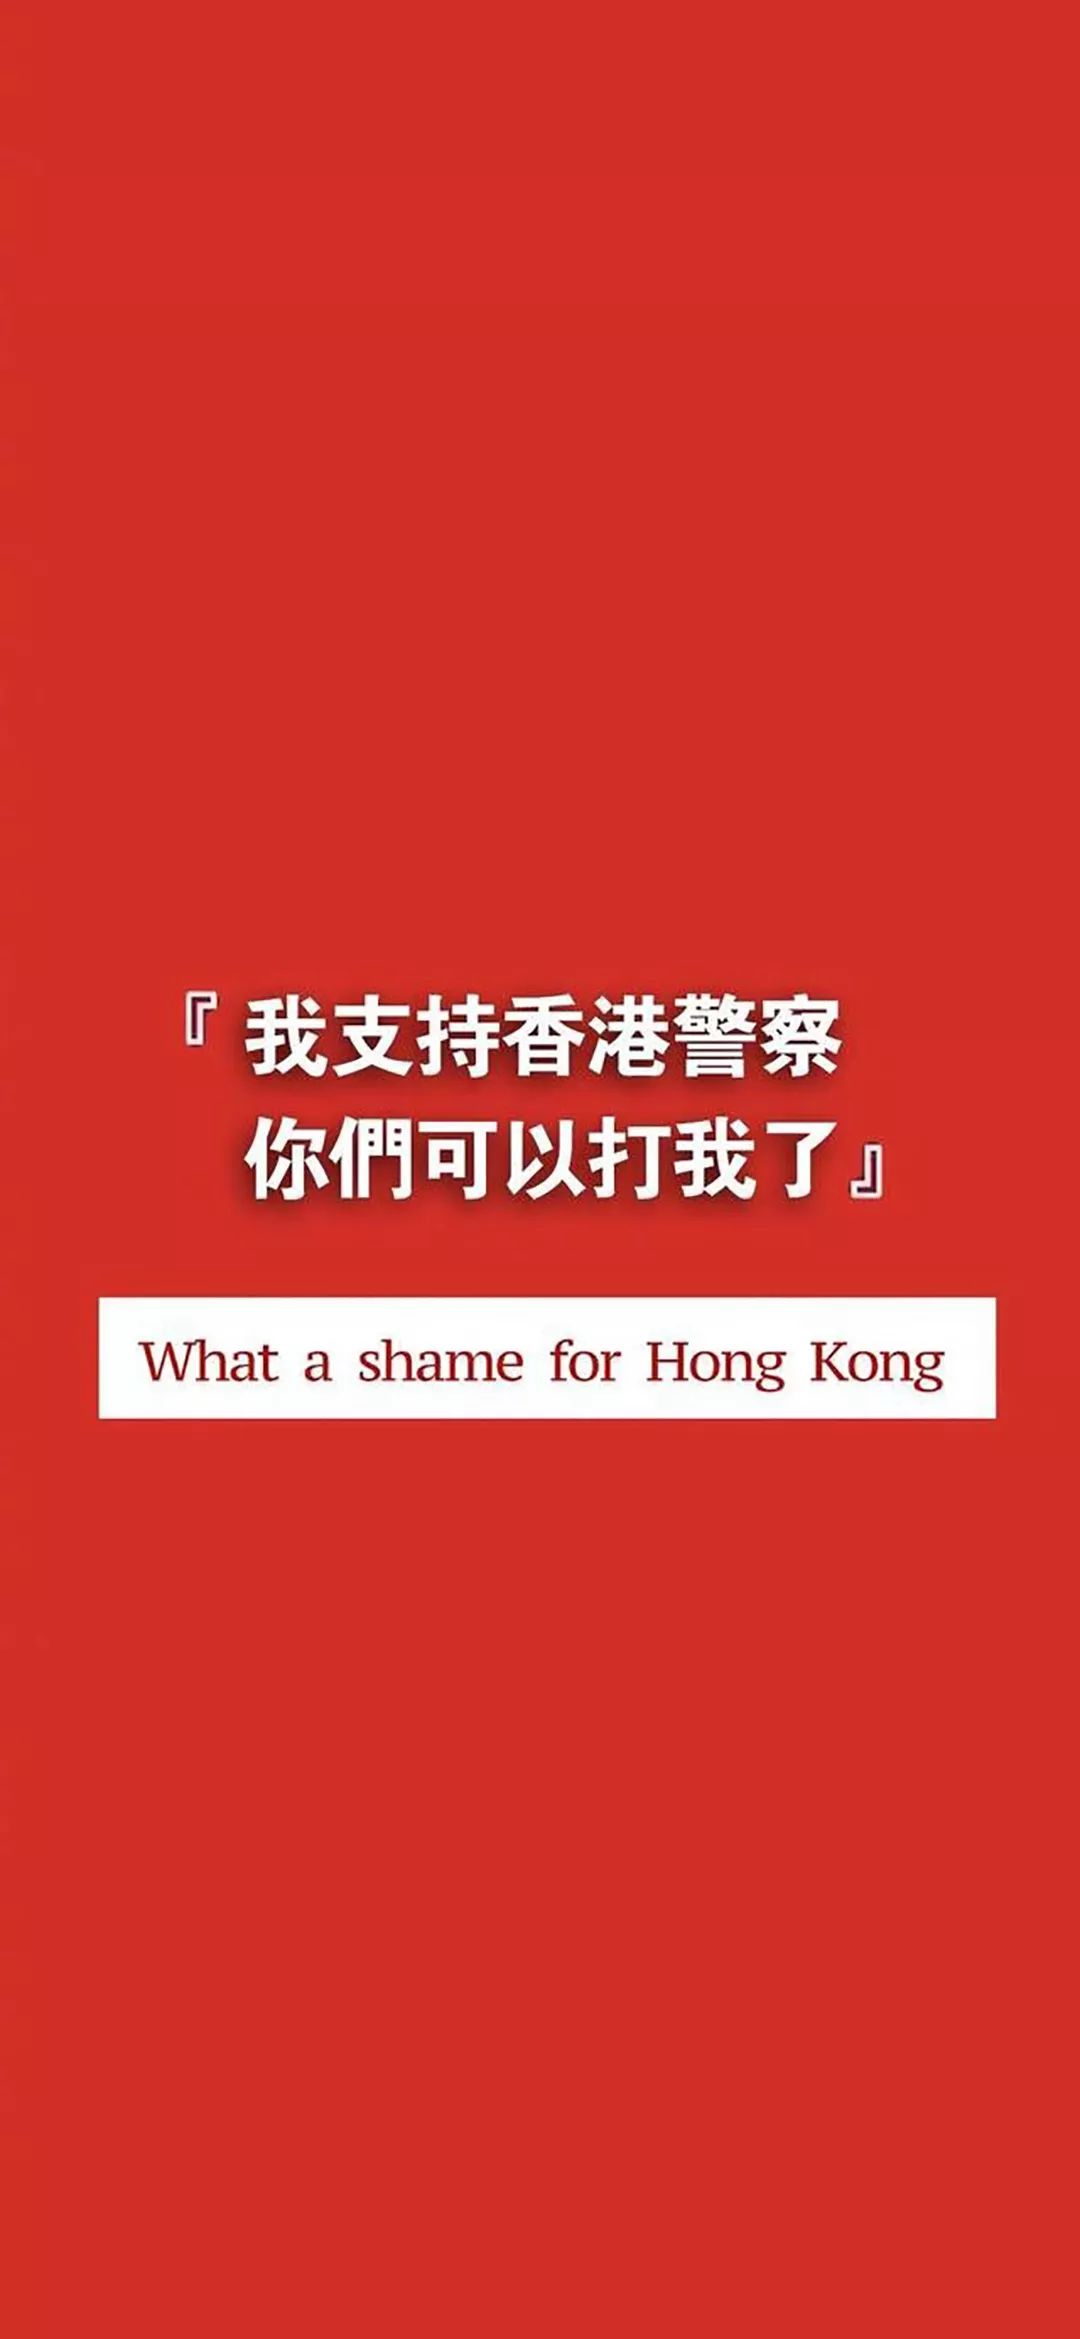 抖音励志壁纸 我支持香港警察 你们可以打我了 捡句子先生 捡句子先生墙纸 微信公众号文章阅读 Wemp